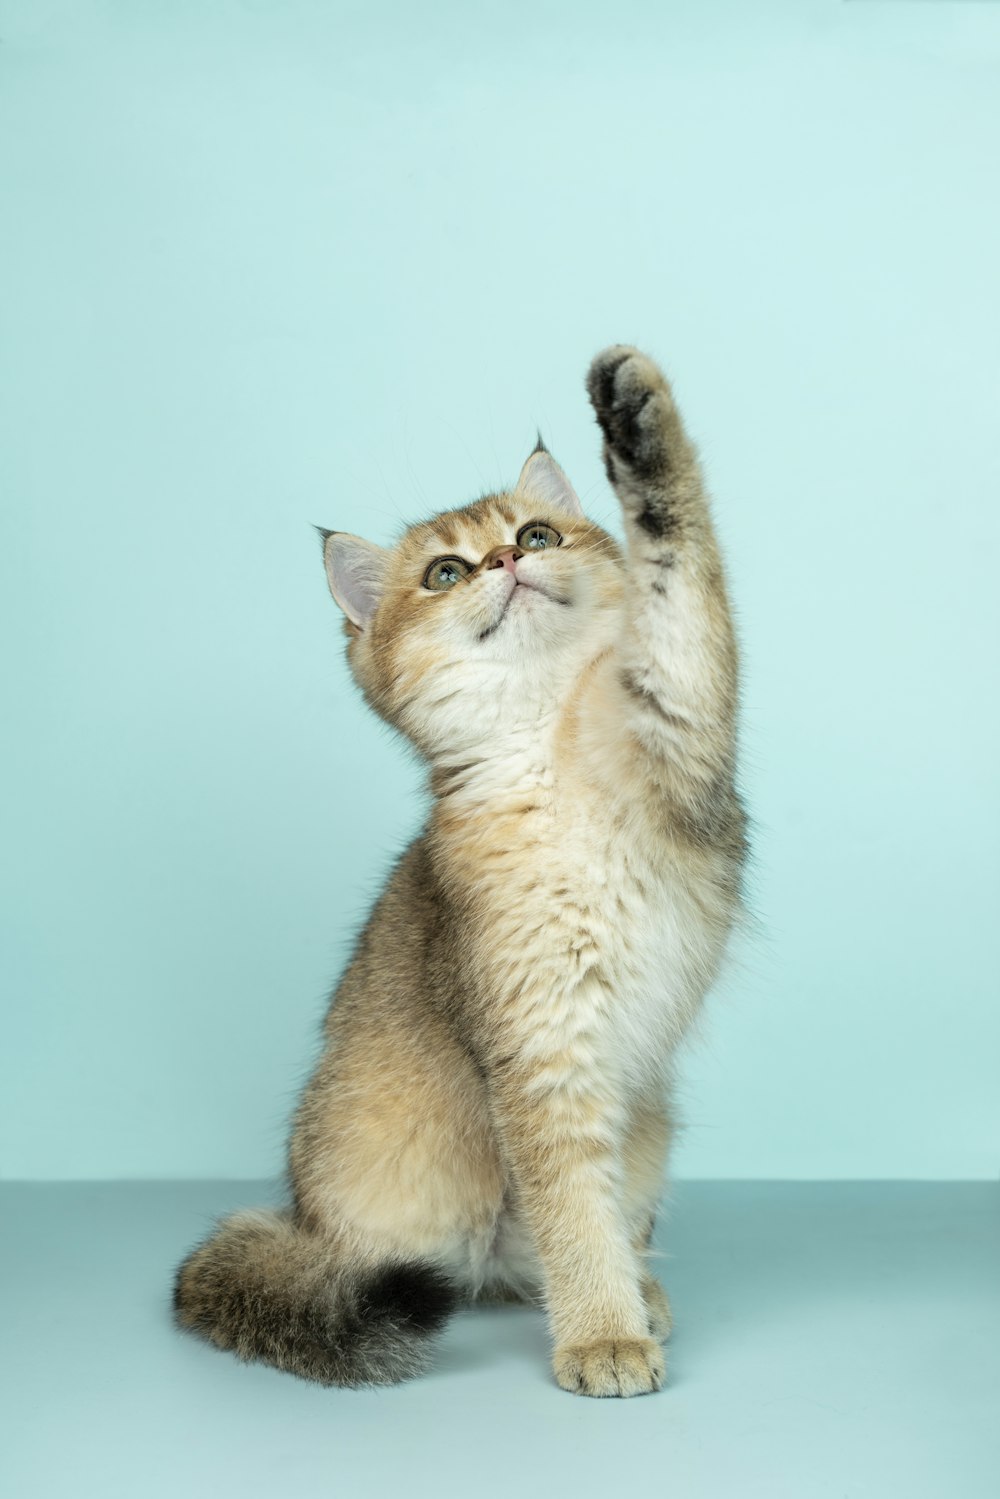 Más de 100 imágenes de gatitos | Descargar imágenes gratis en Unsplash